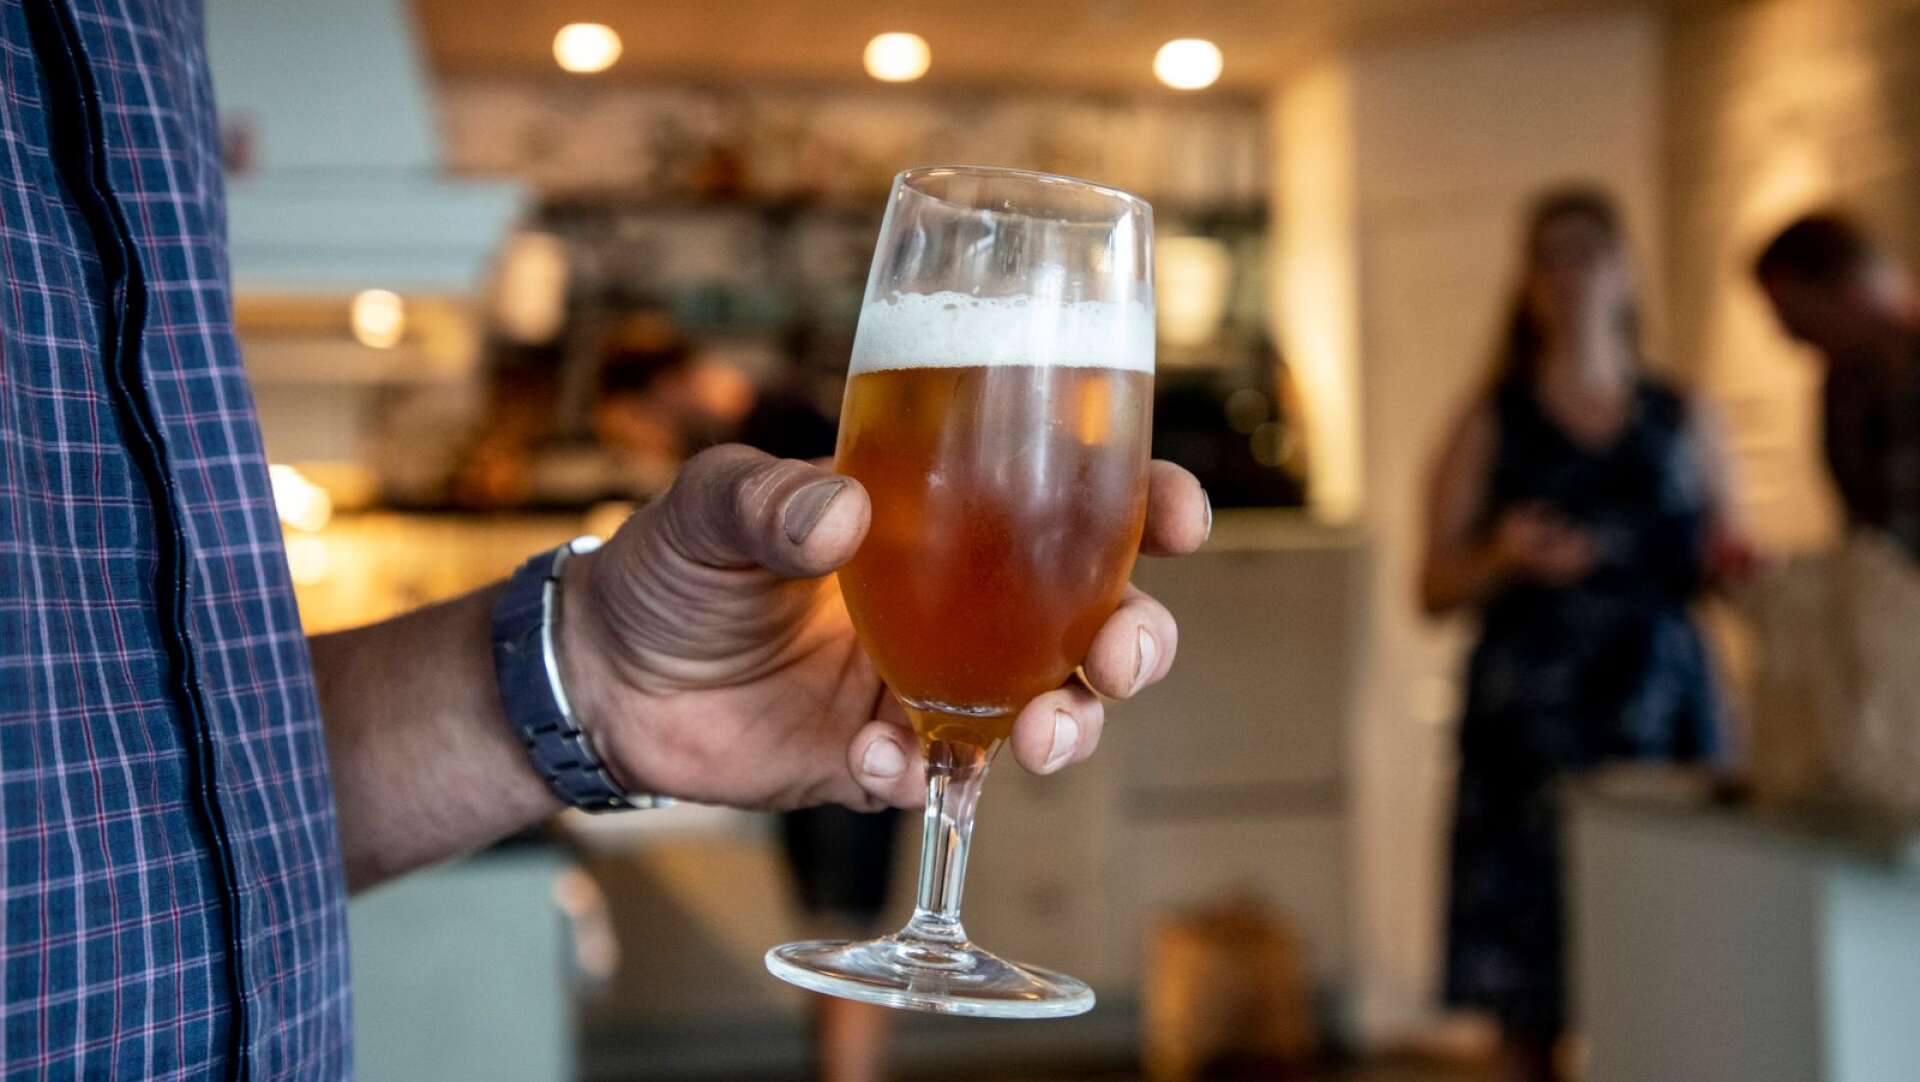 SLA har kartlagt var du kan gå ut och dricka det billigaste glaset öl i Skövde.